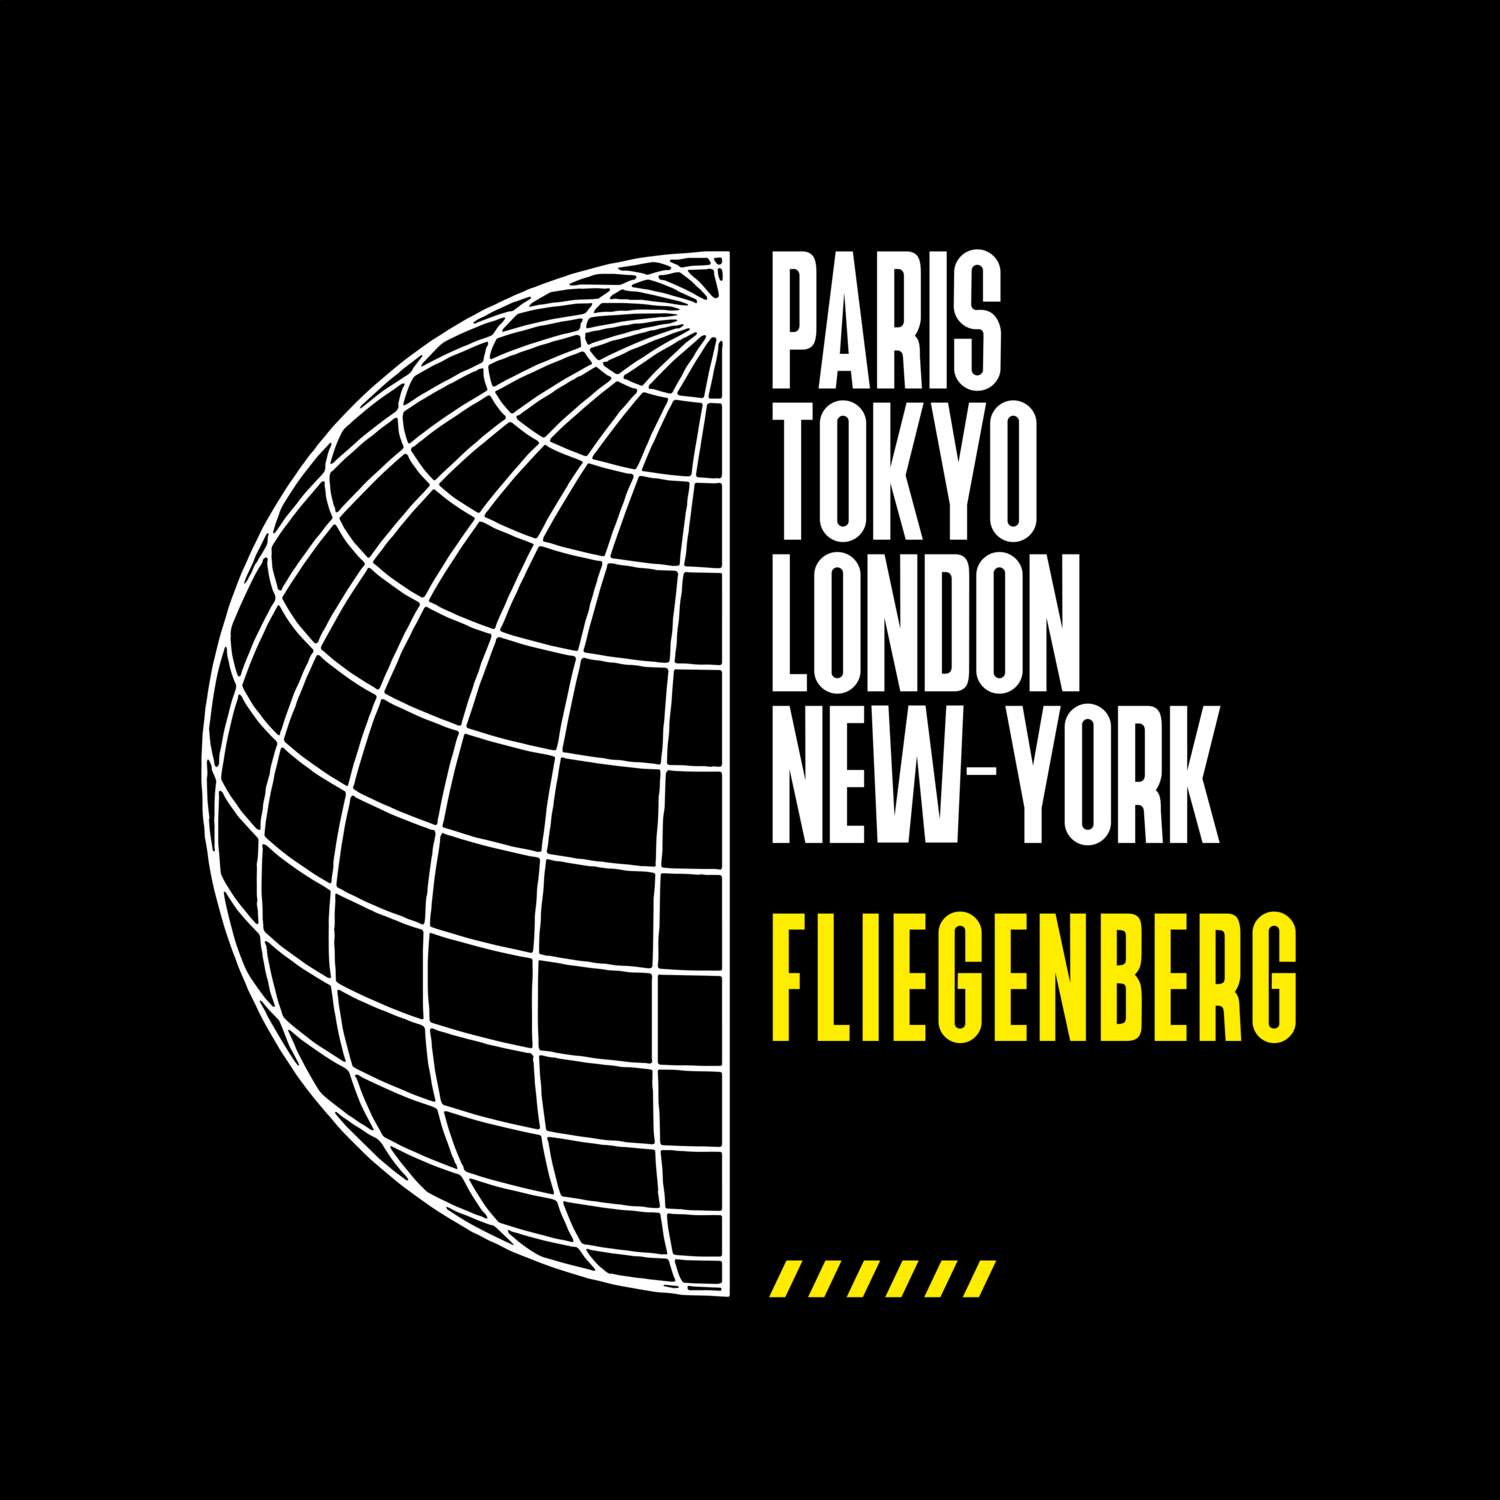 Fliegenberg T-Shirt »Paris Tokyo London«